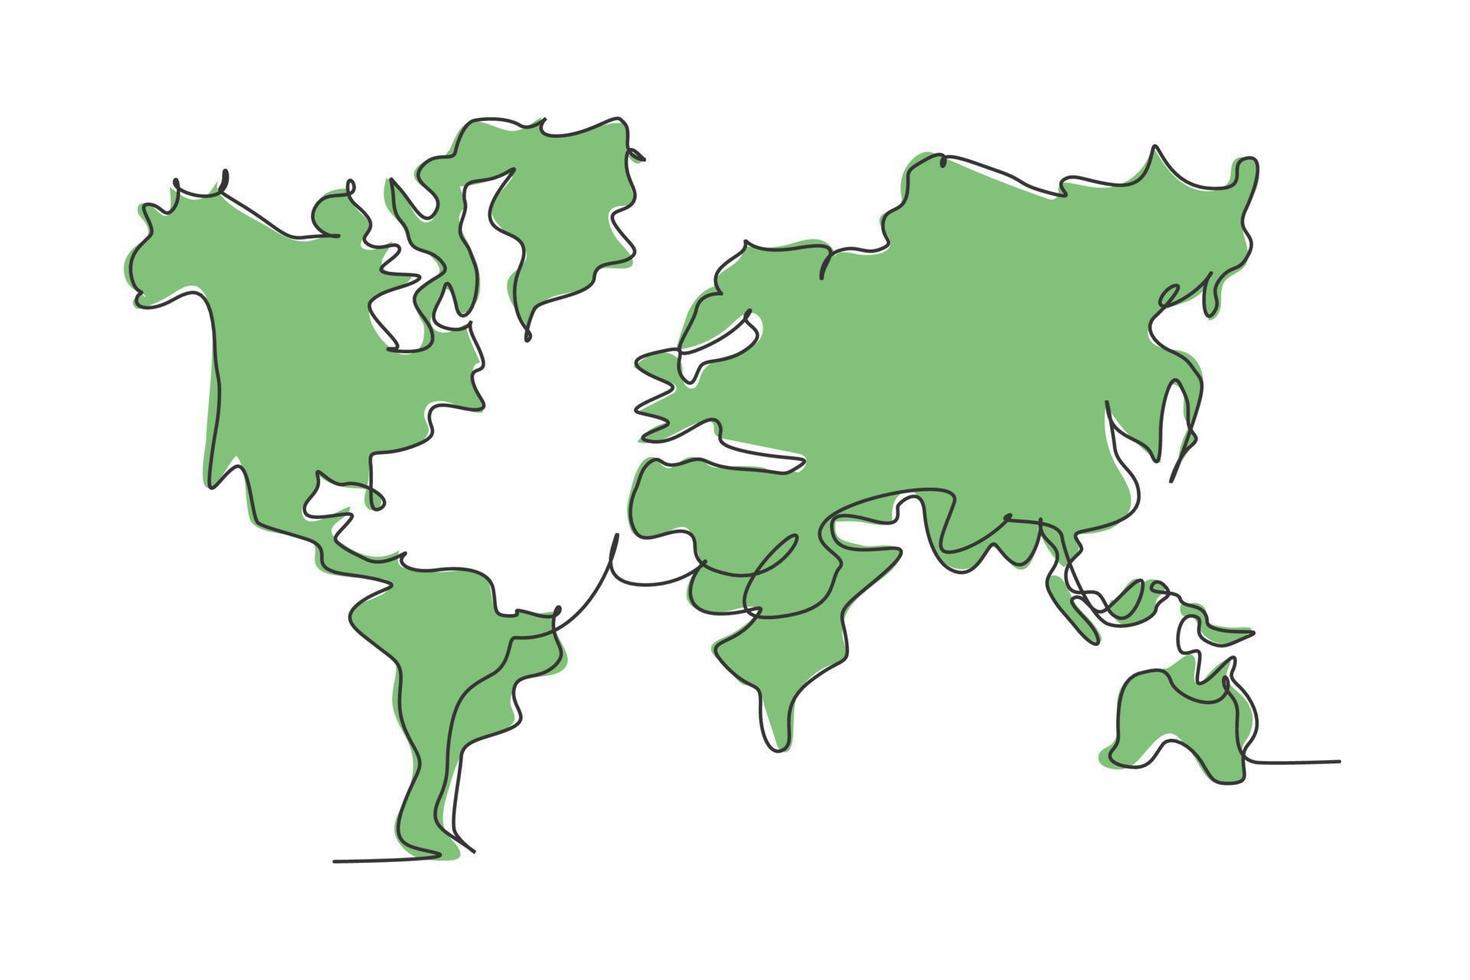 världsatlas. kontinuerlig en linje ritning av världskartan minimalistisk vektor illustration design på vit bakgrund. isolerad enkel rad modern grafisk stil. handritat grafiskt koncept för utbildning